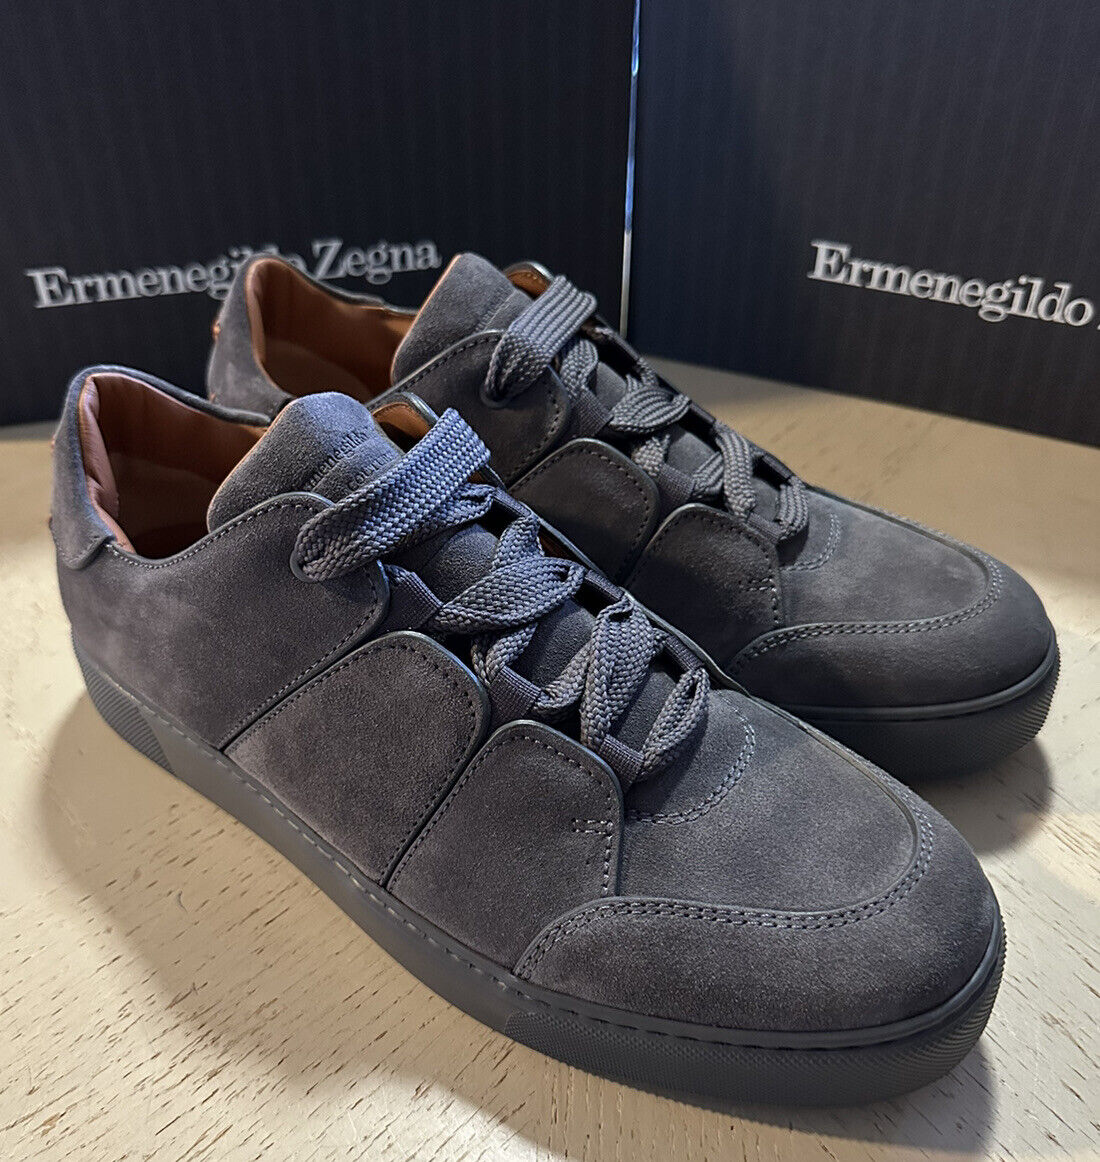 Новые кроссовки Ermenegildo Zegna Couture из замши/кожи, темно-серые, 7 долларов США/40 евро, $850